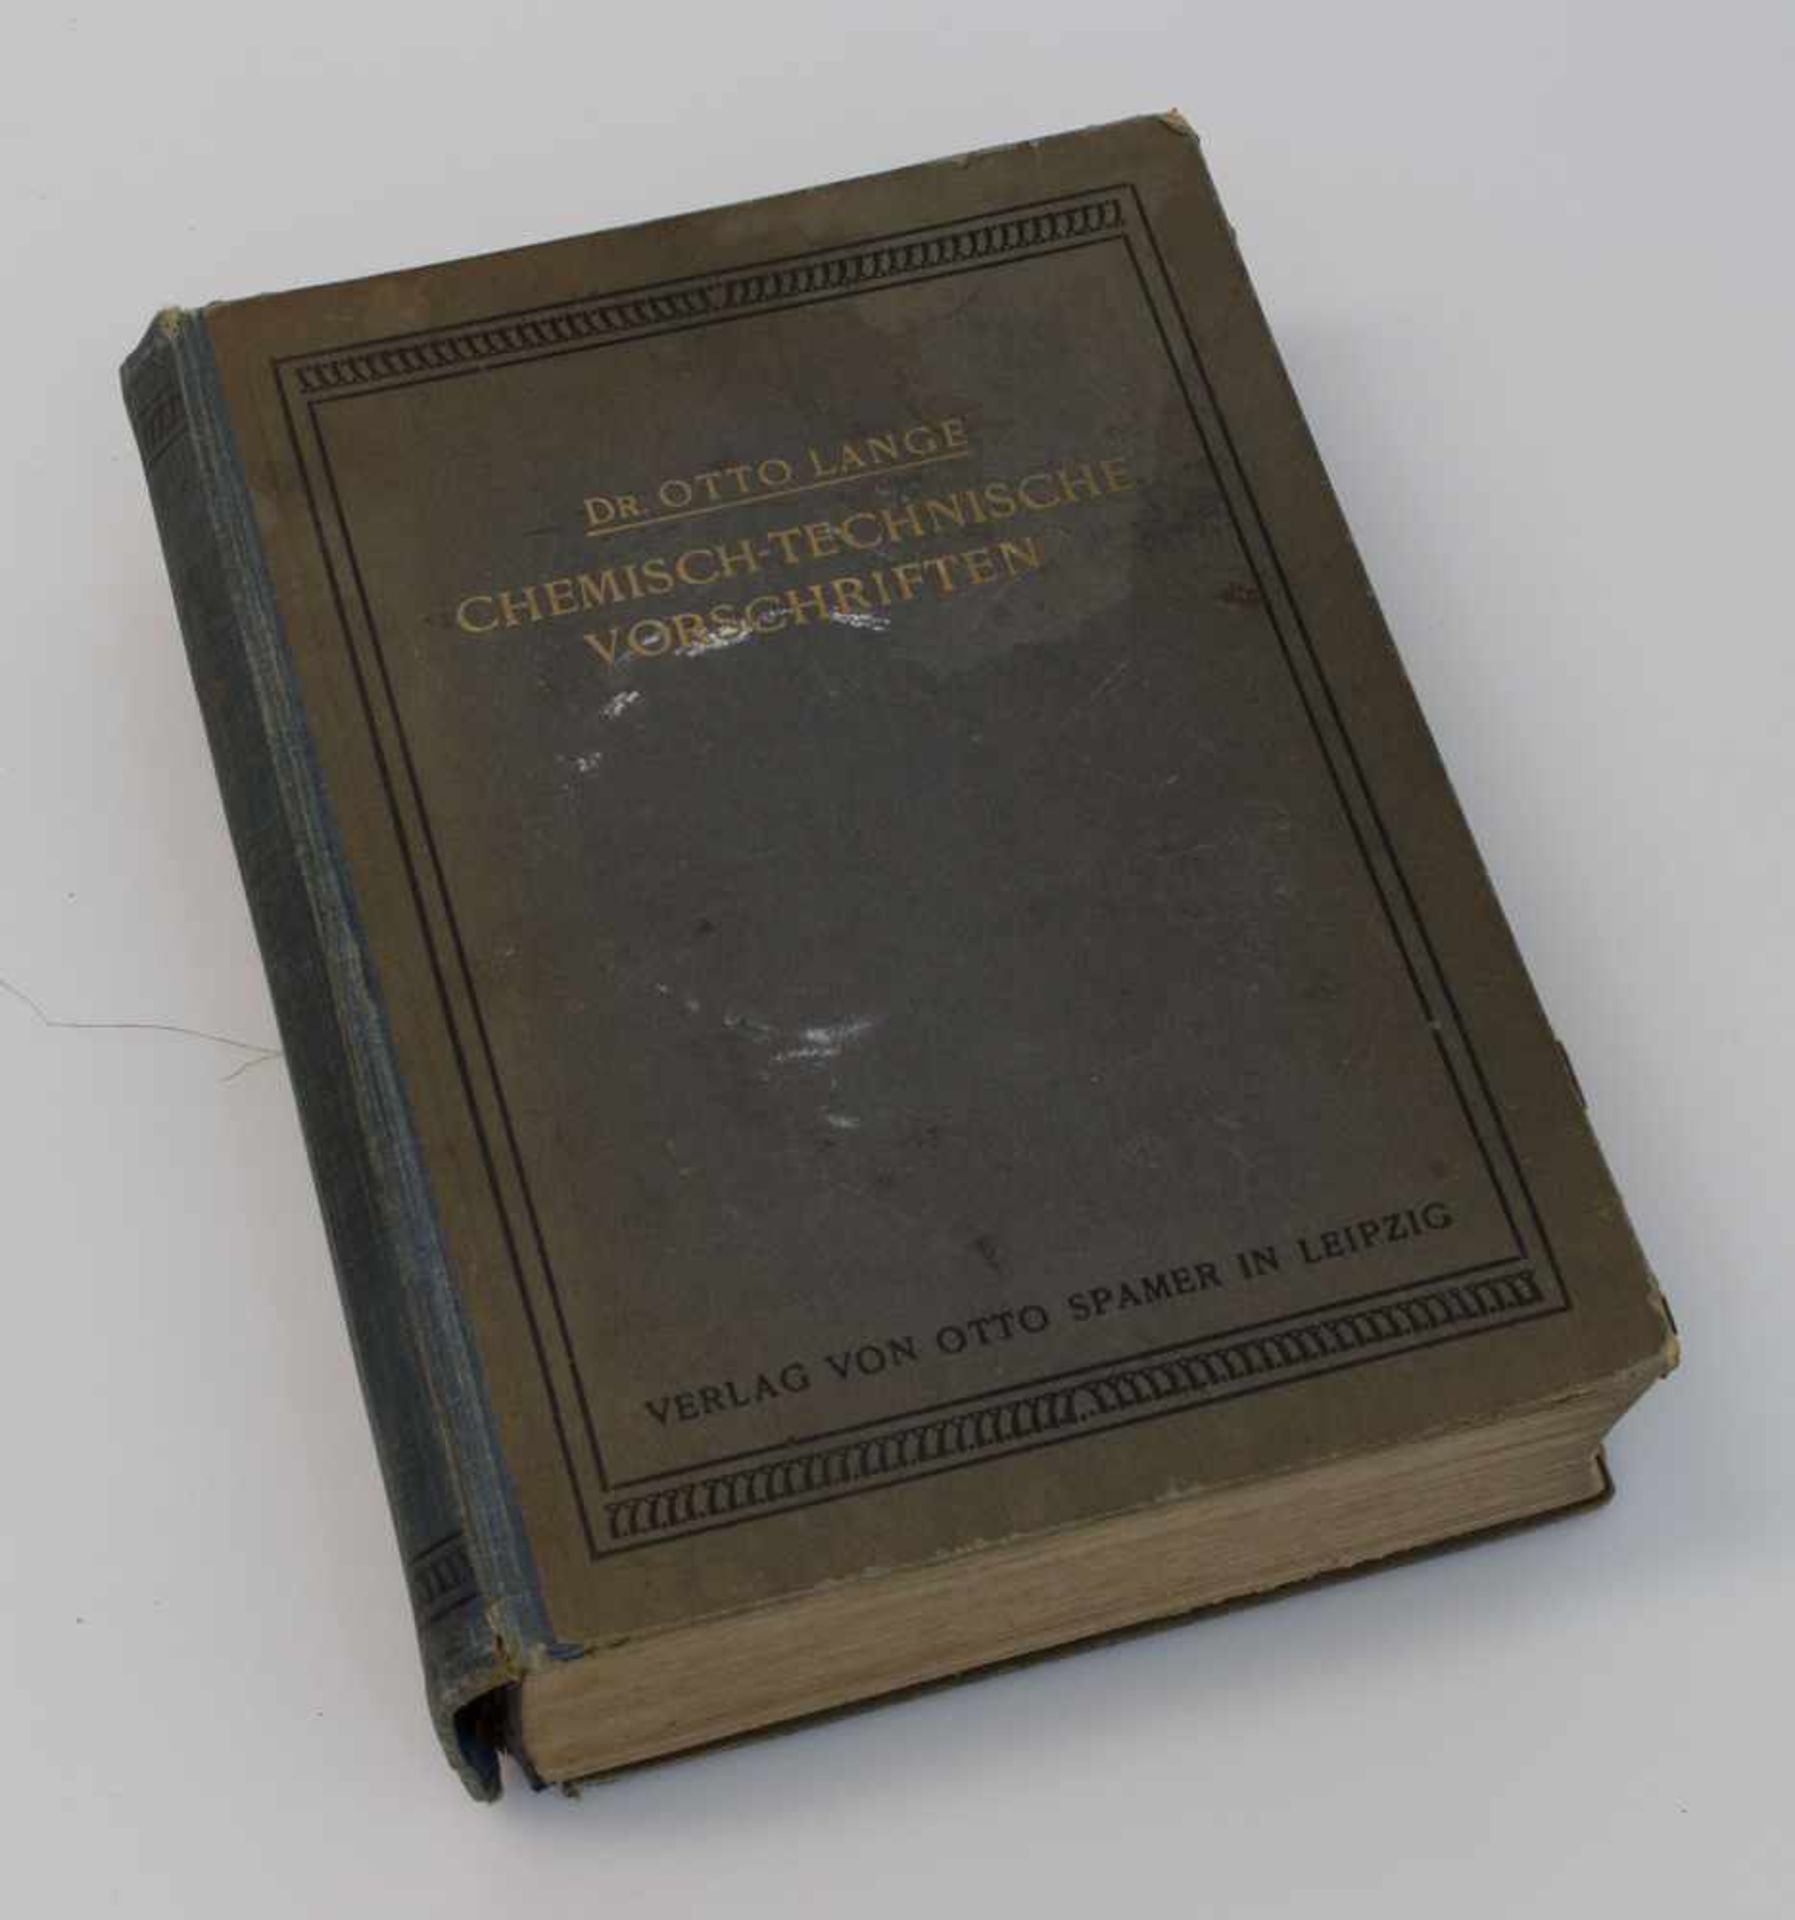 Dr. Otto Lange "Chemisch-Technische Vorschriften" - Verlag Otto Spamer/ Leipzig 1920, 1016 S., OLn.